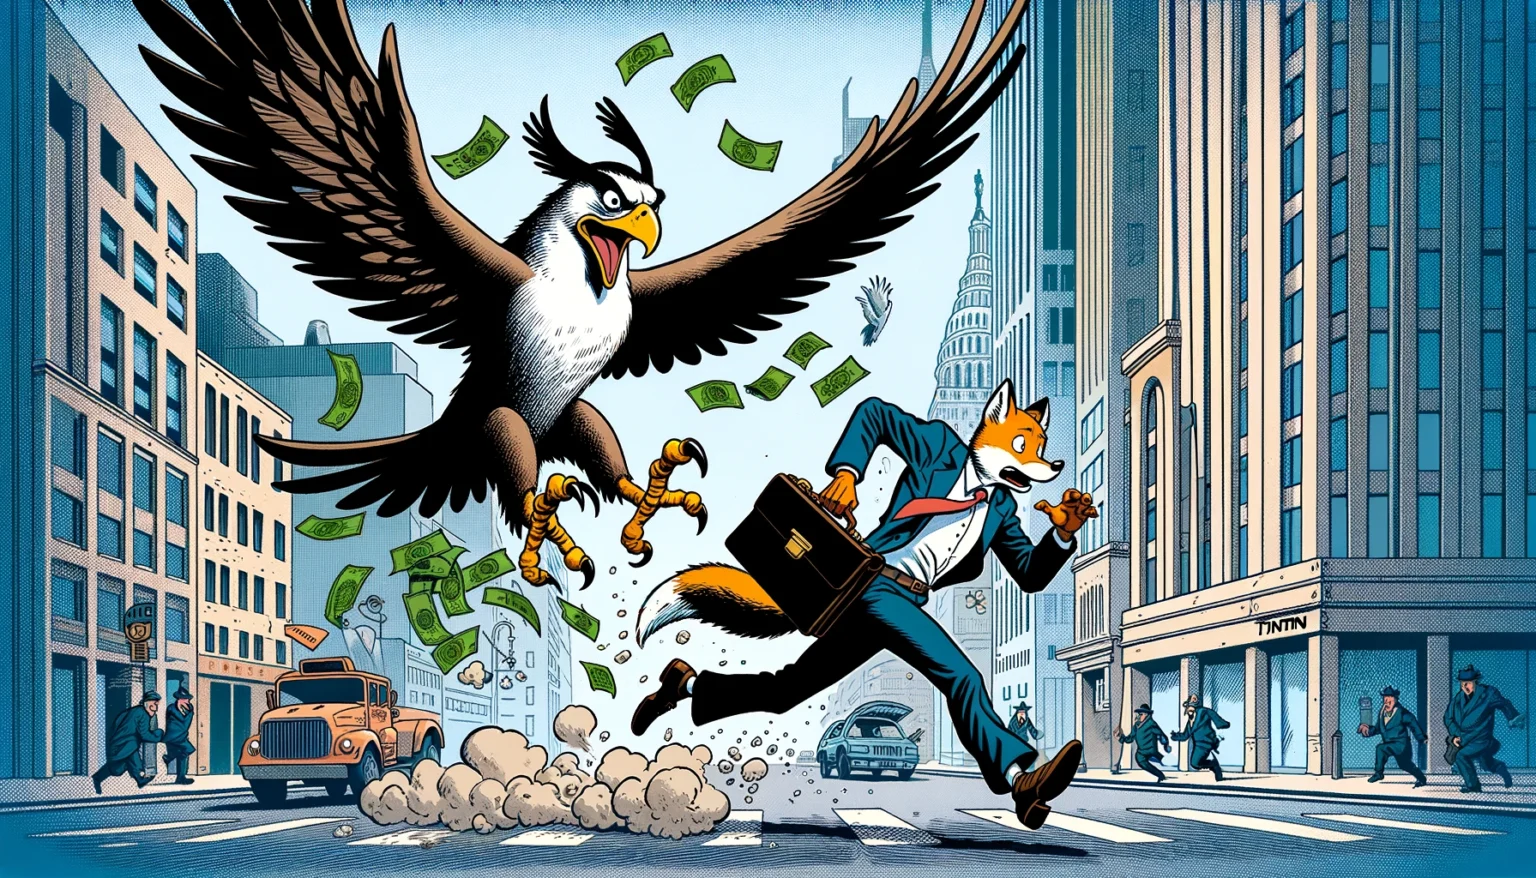 Illustratie in stripstijl van een arend in een pak die een vos in pak achtervolgt door de straten van New York City, terwijl geld uit de aktetas van de vos waait